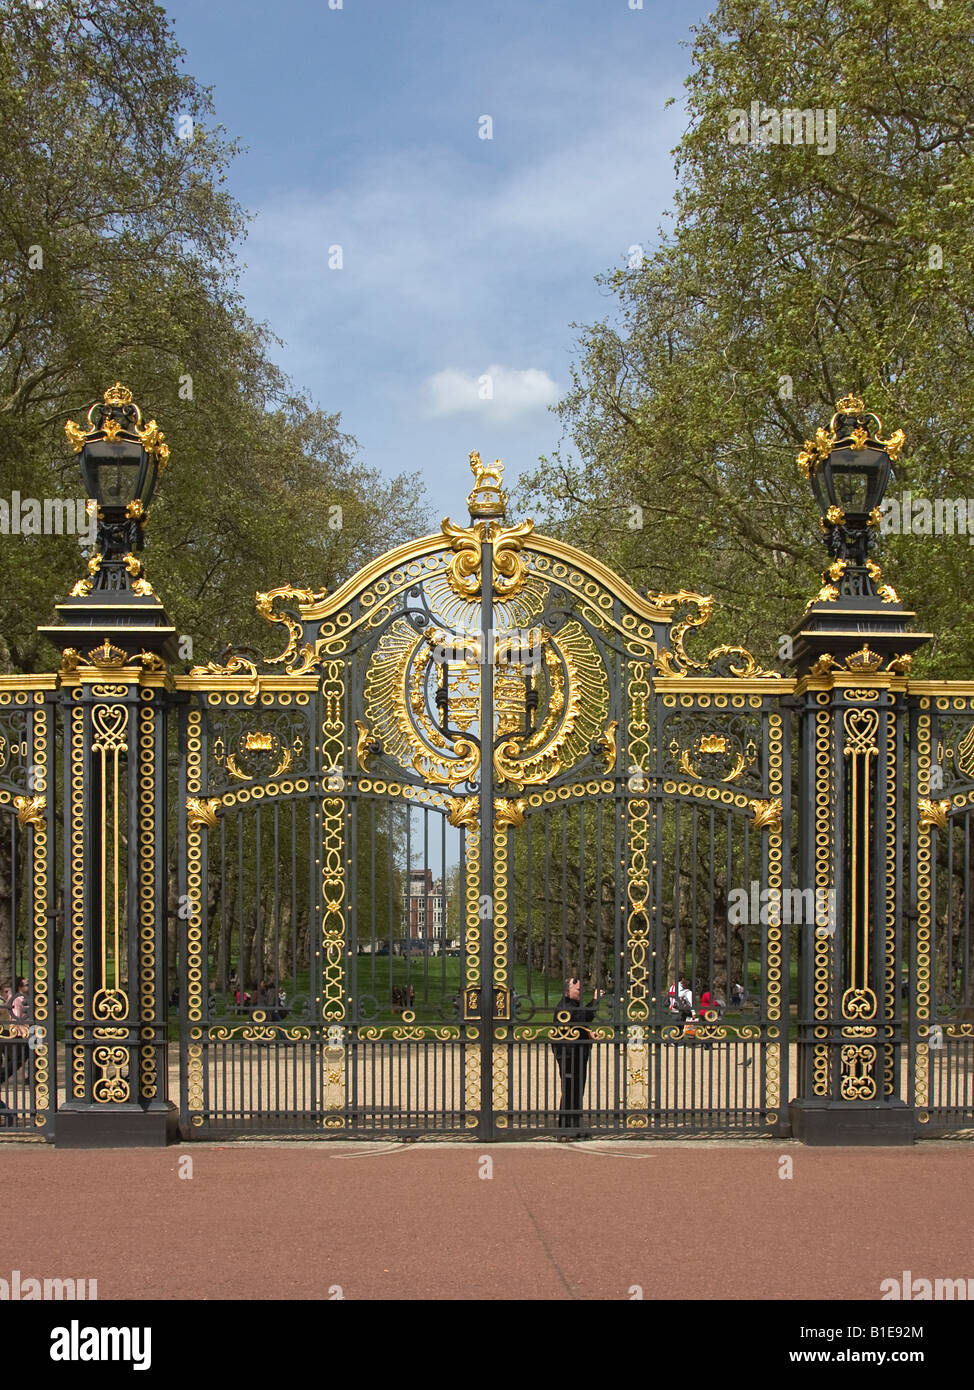 Les portes du Canada à Buckingham Palace Park Londres Angleterre Banque D'Images